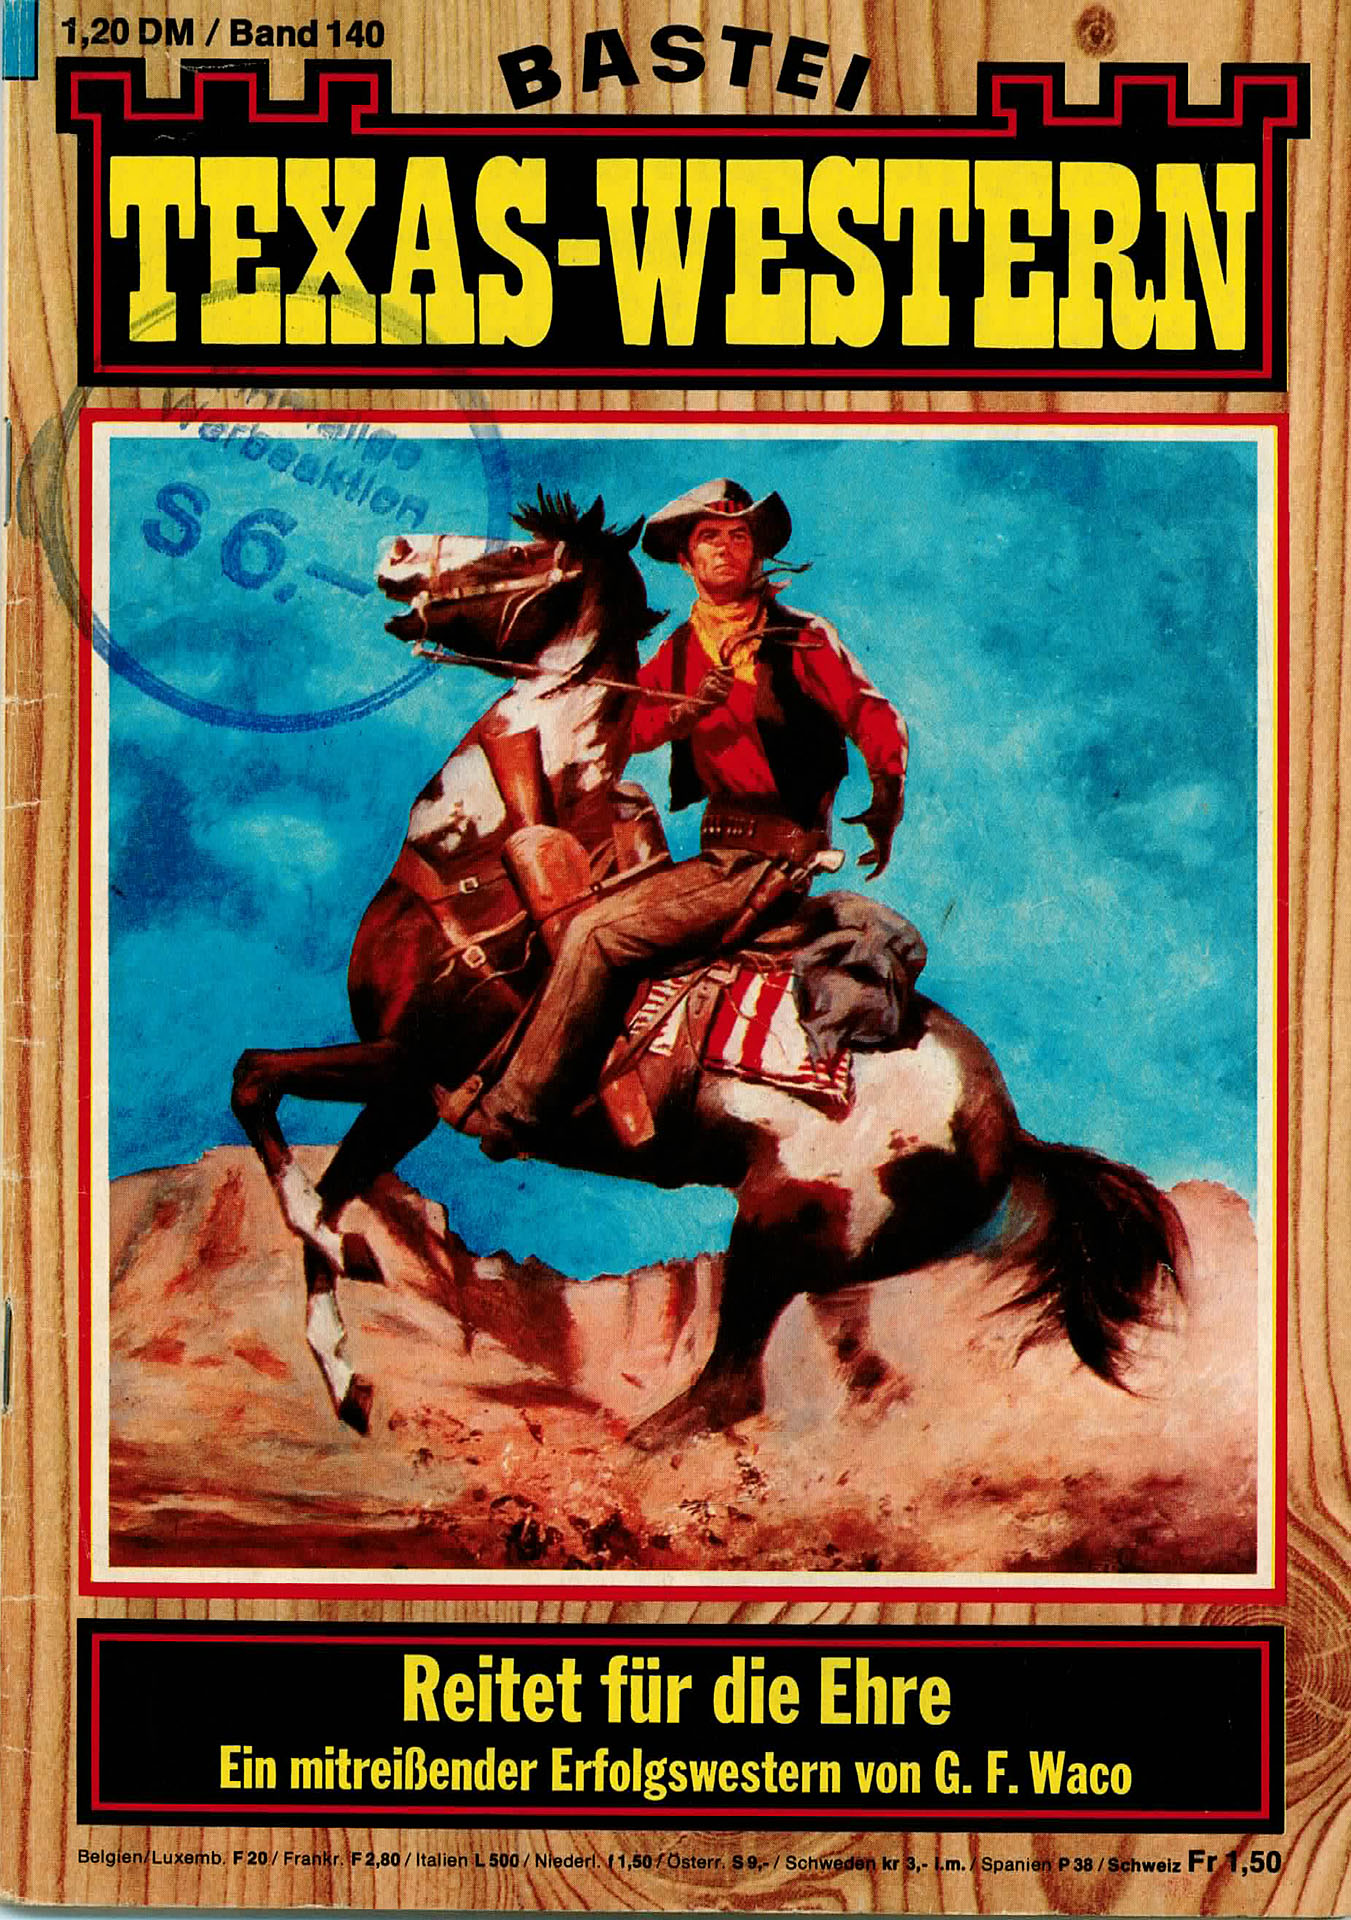 Reitet für die Ehre - Texas - Western - Waco, G. F.